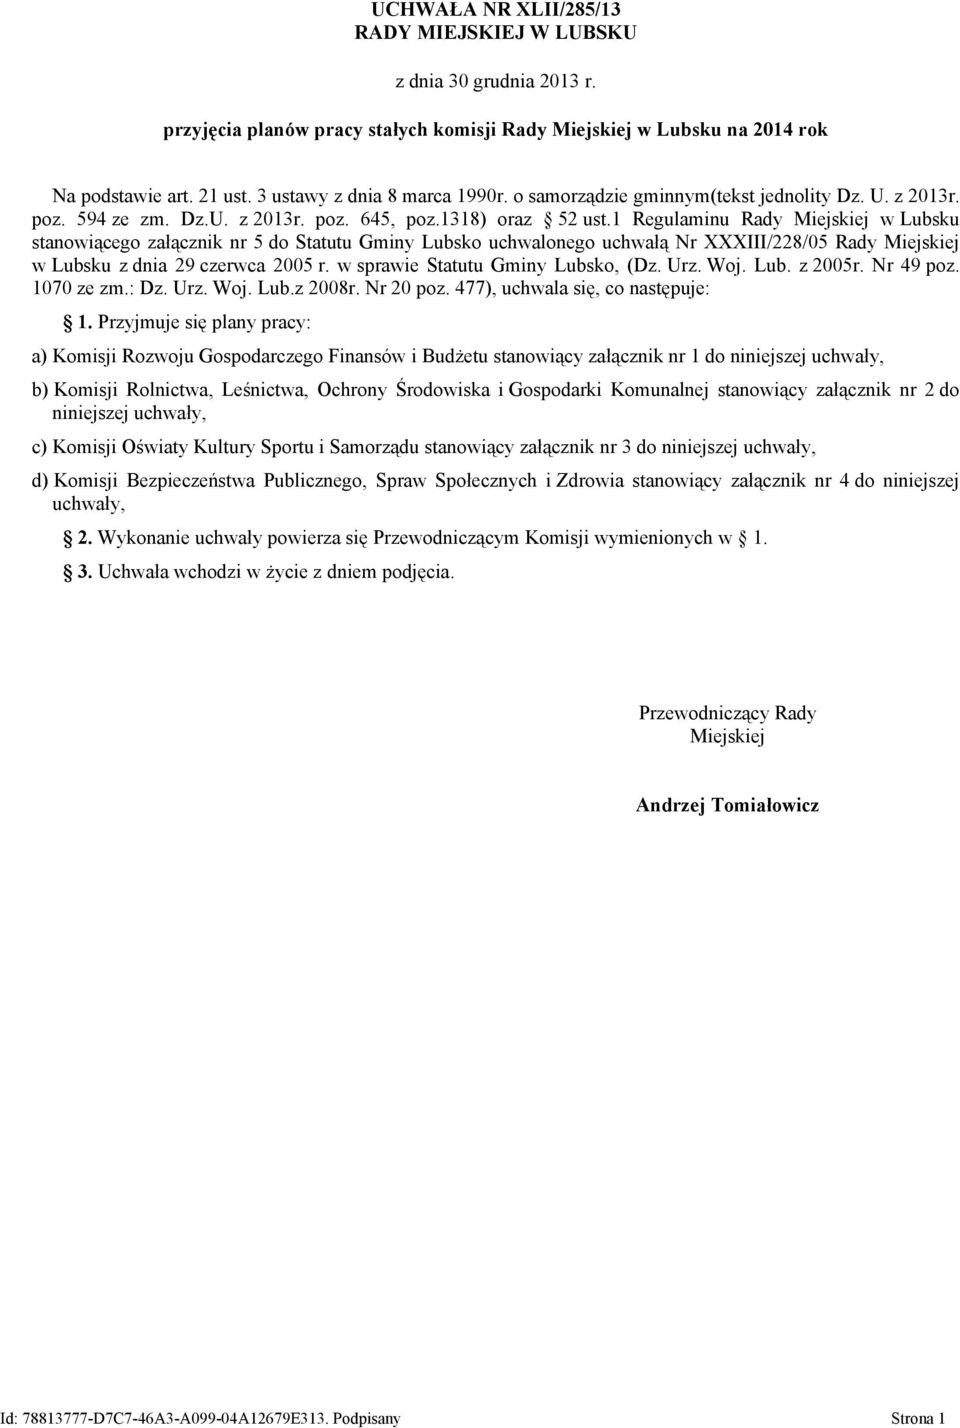 1 Regulaminu stanowiącego załącznik nr 5 do Statutu Gminy Lubsko uchwalonego uchwałą Nr XXXIII/228/05 Rady Miejskiej w Lubsku z dnia 29 czerwca 2005 r. w sprawie Statutu Gminy Lubsko, (Dz. Urz. Woj.